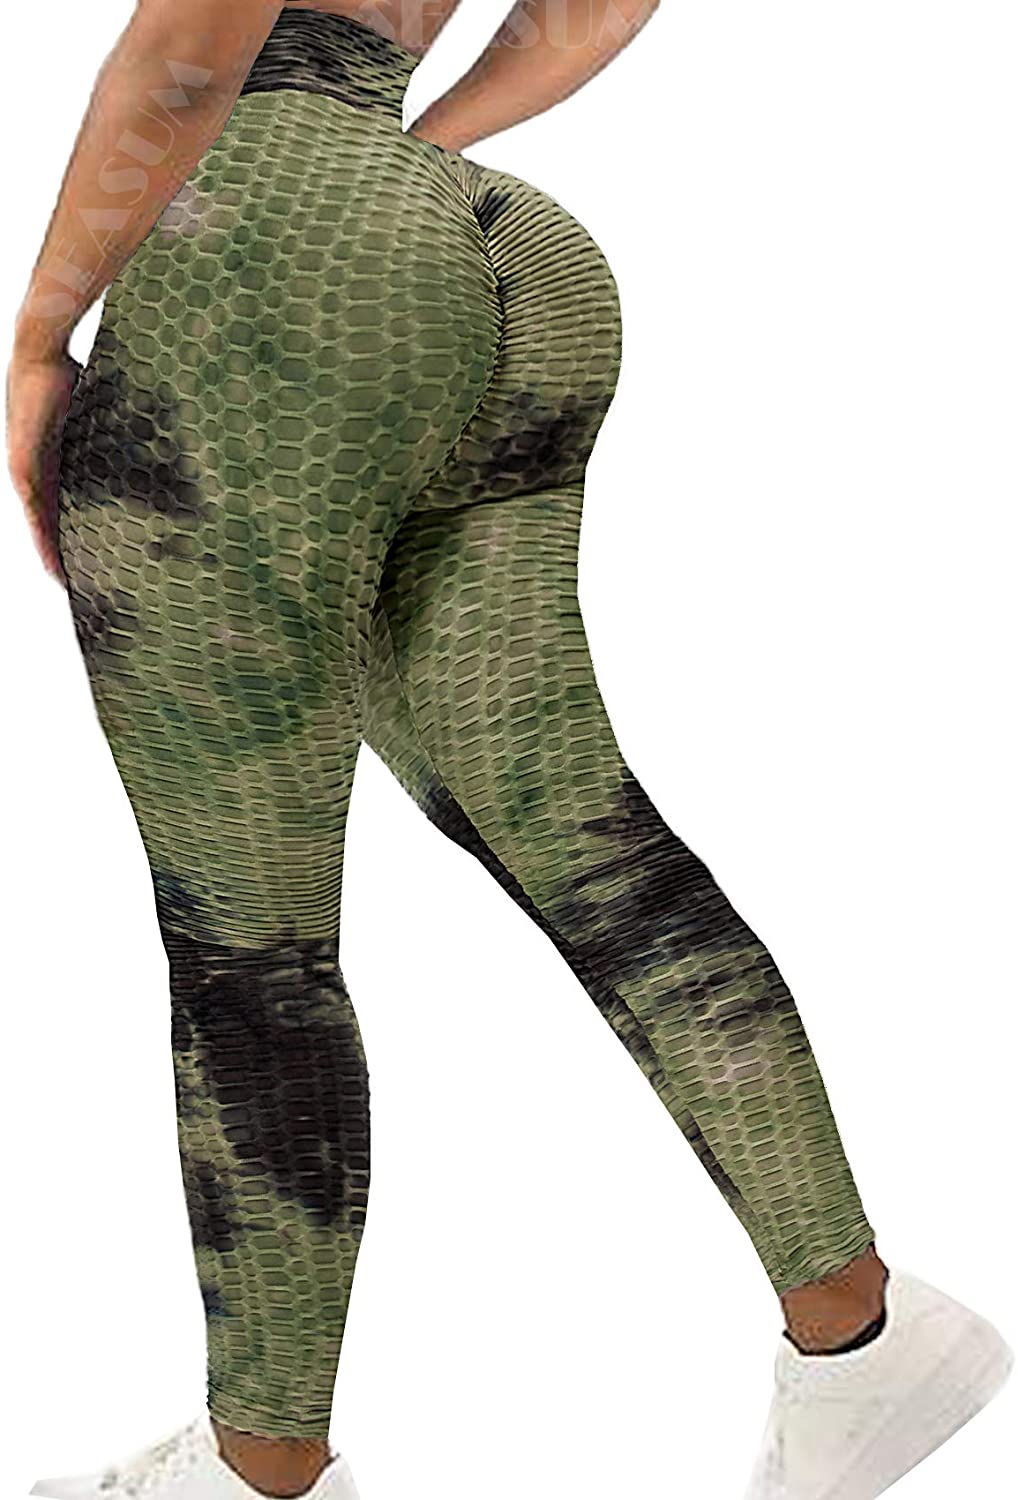 Green on Black Workout Leggings for Women Butt Lift Yoga Pants for Women  High Waisted Leggings for Women